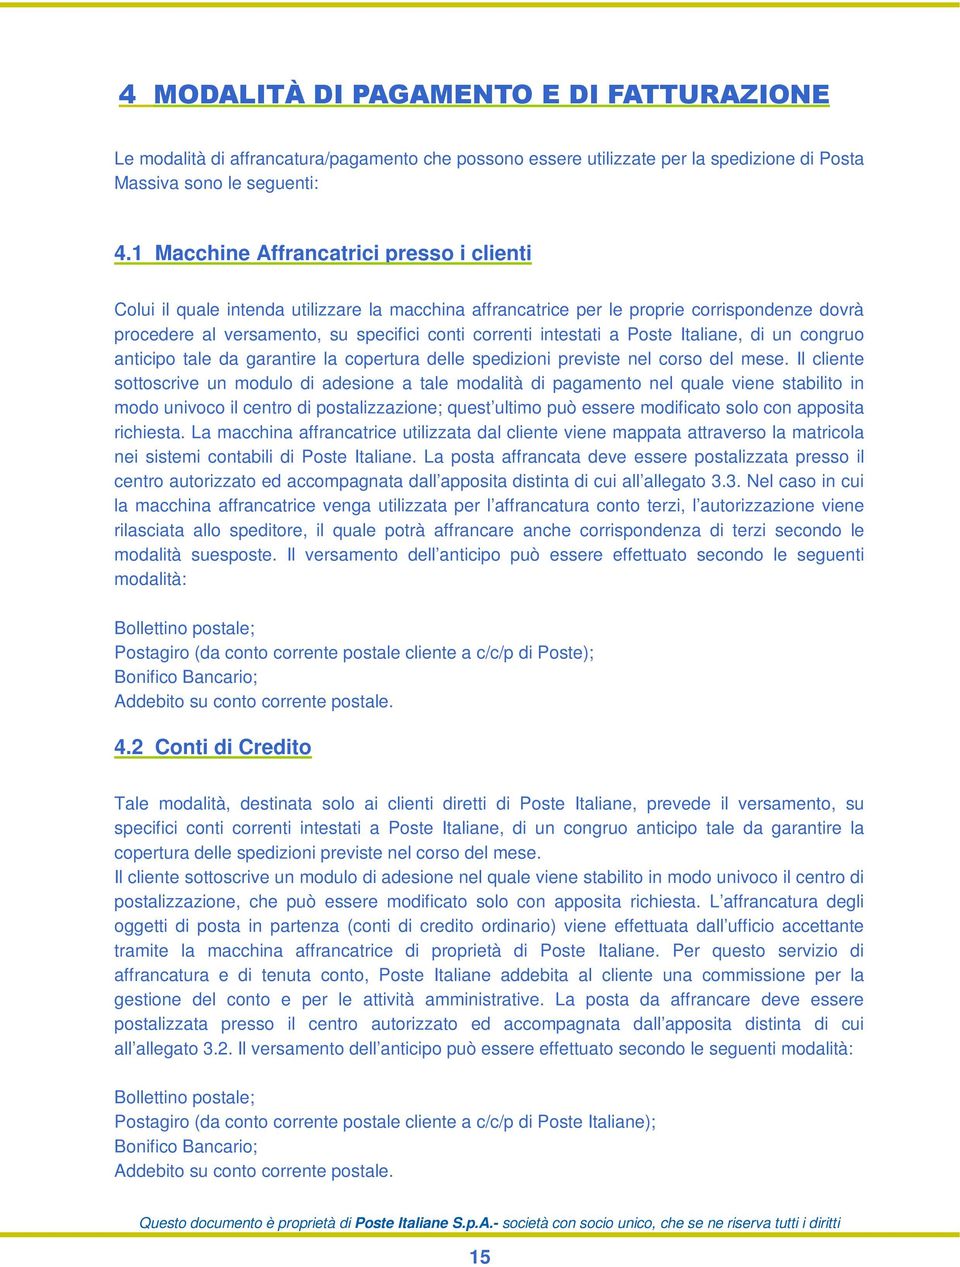 intestati a Poste Italiane, di un congruo anticipo tale da garantire la copertura delle spedizioni previste nel corso del mese.